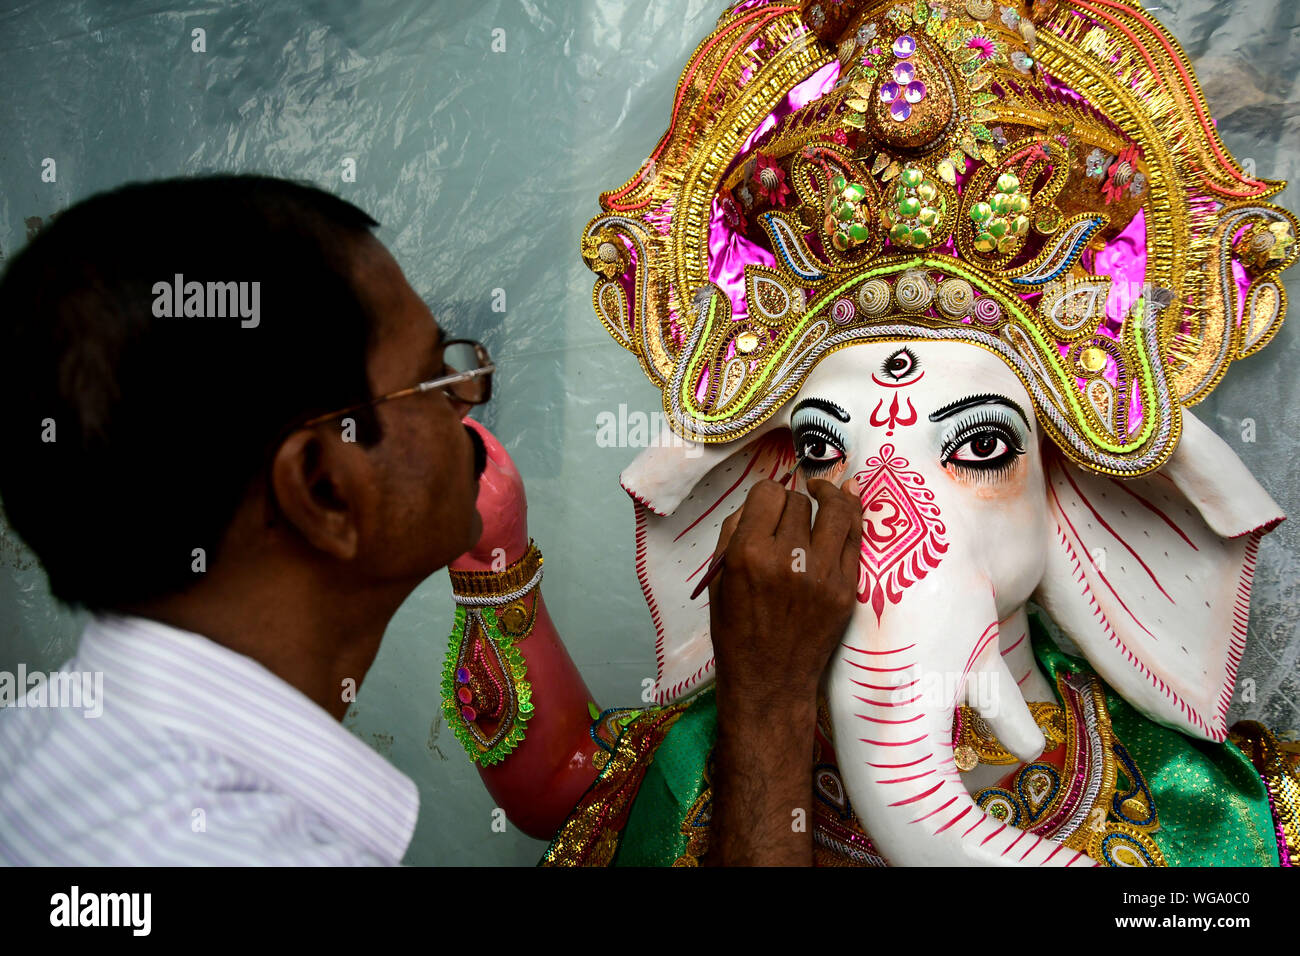 Idol Of Lord Ganesha Artisans Of Kumortuli Kolkata Makes Thousands Of Lord Ganesha Clay 